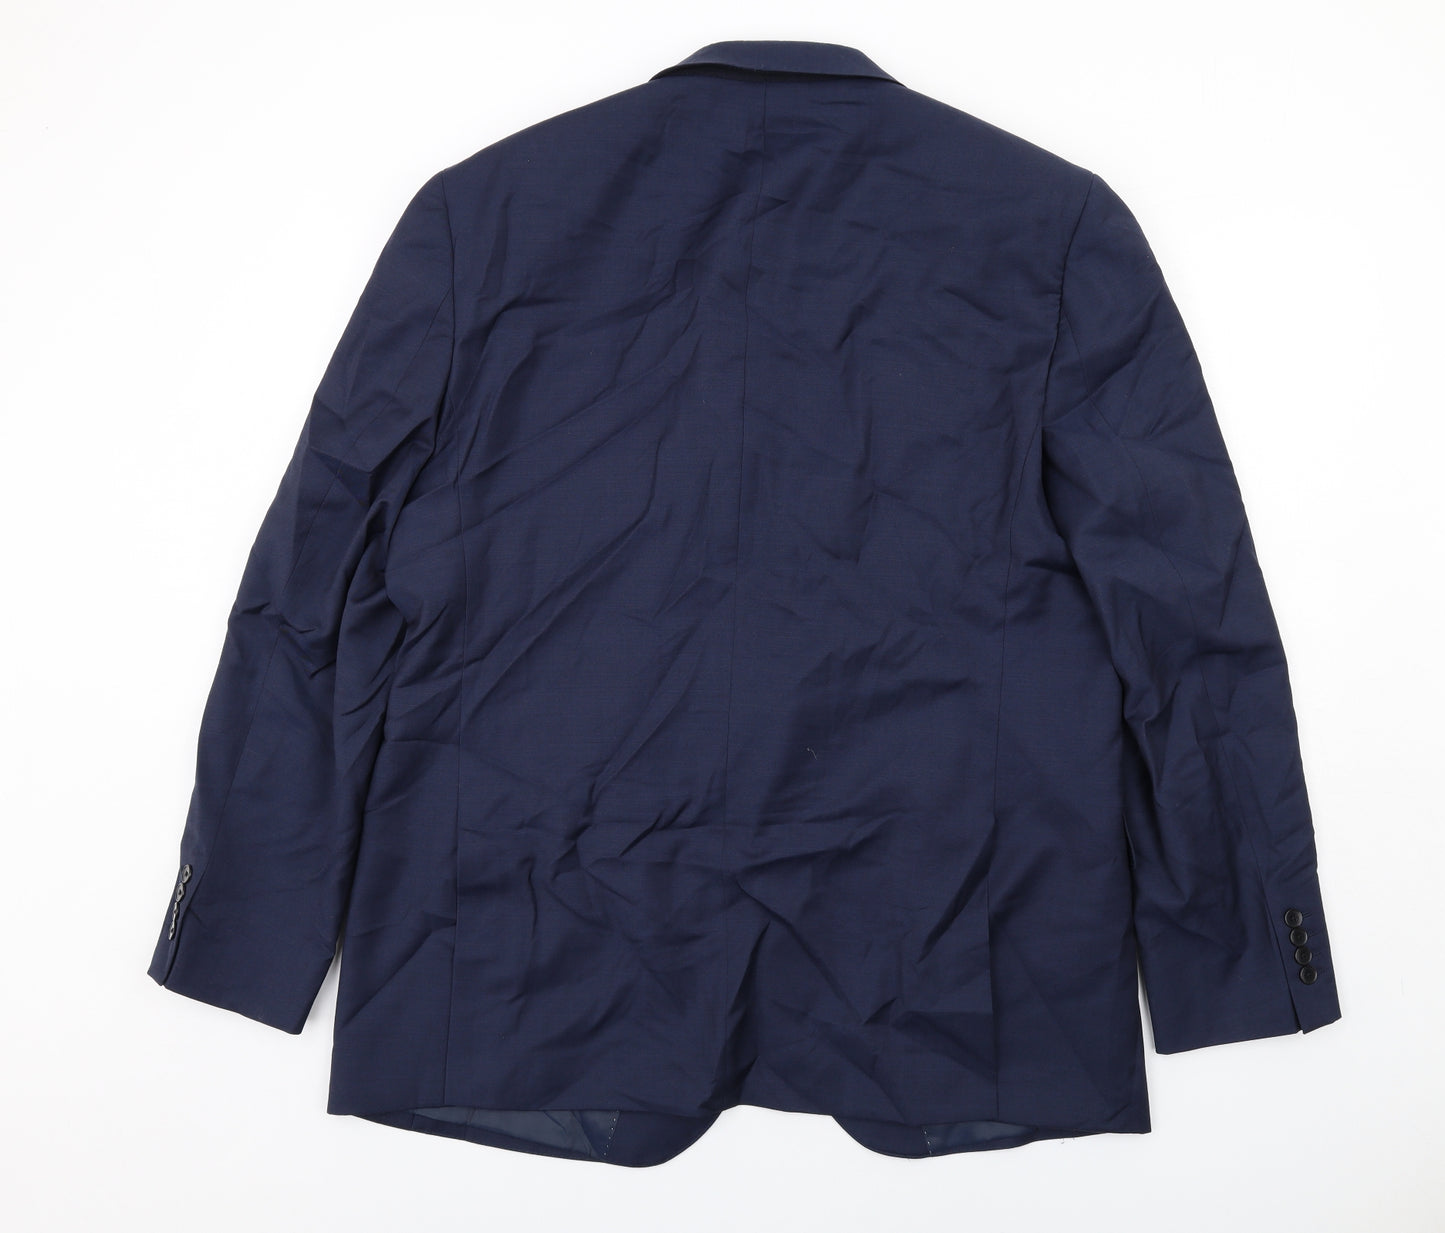 Marks and Spencer Mens Blue Wool Jacket Suit Jacket Size 46 Regular